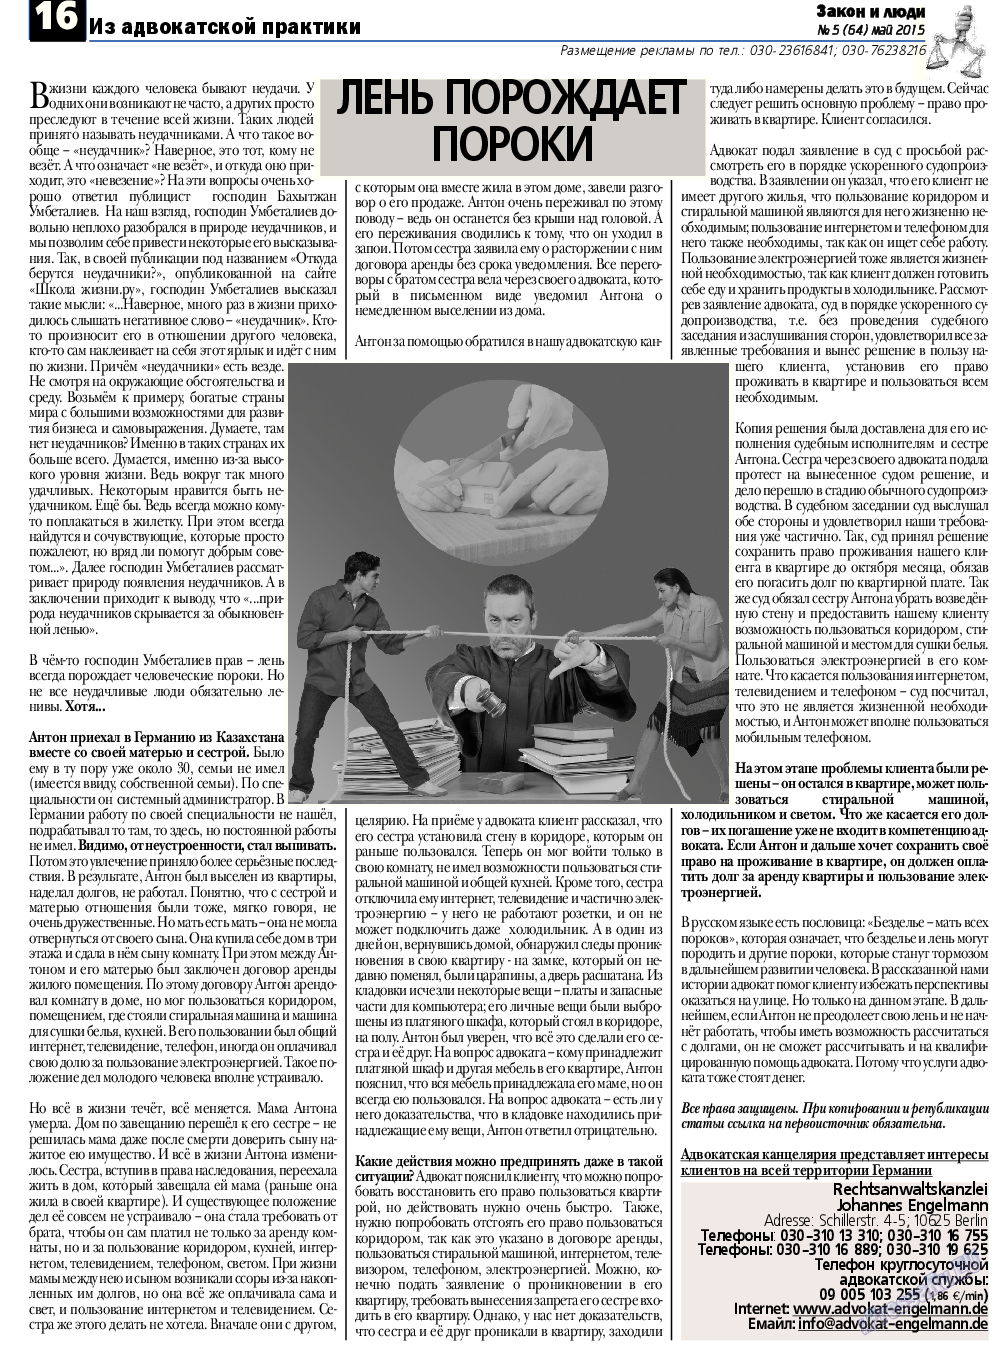 Закон и люди, газета. 2015 №5 стр.16